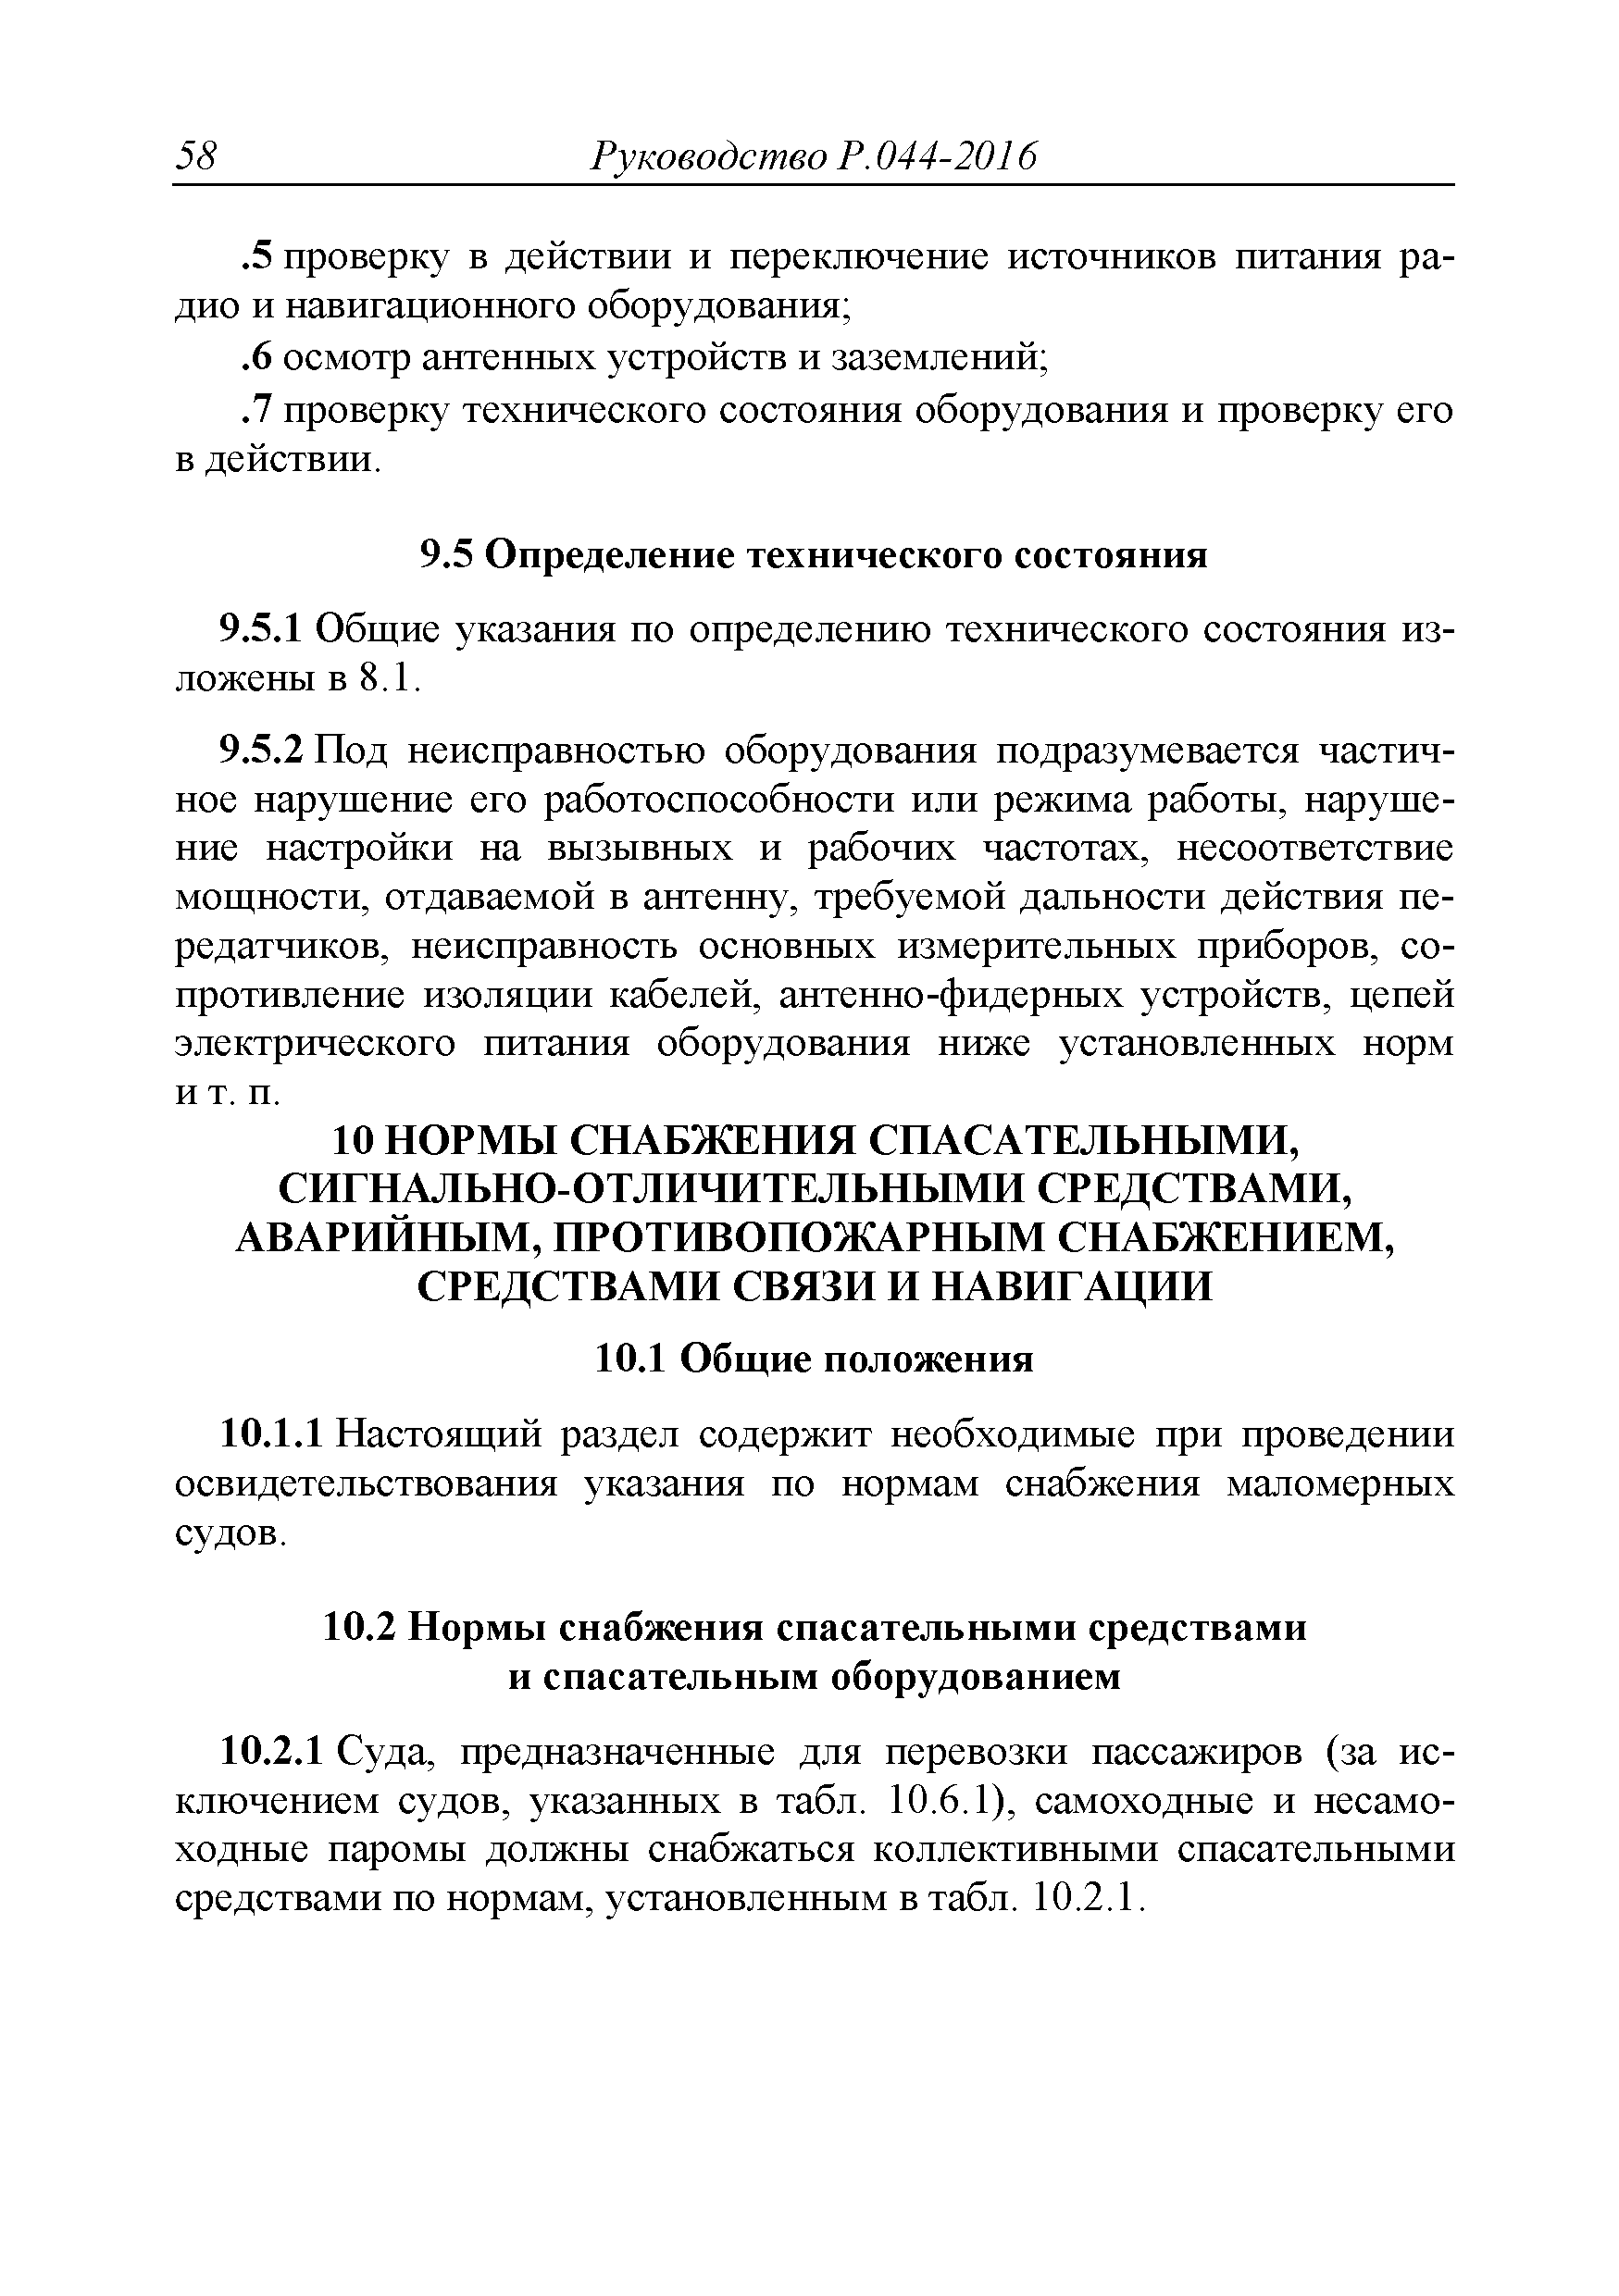 Инструкция По Использованию Судовых Спасательных Средств.doc